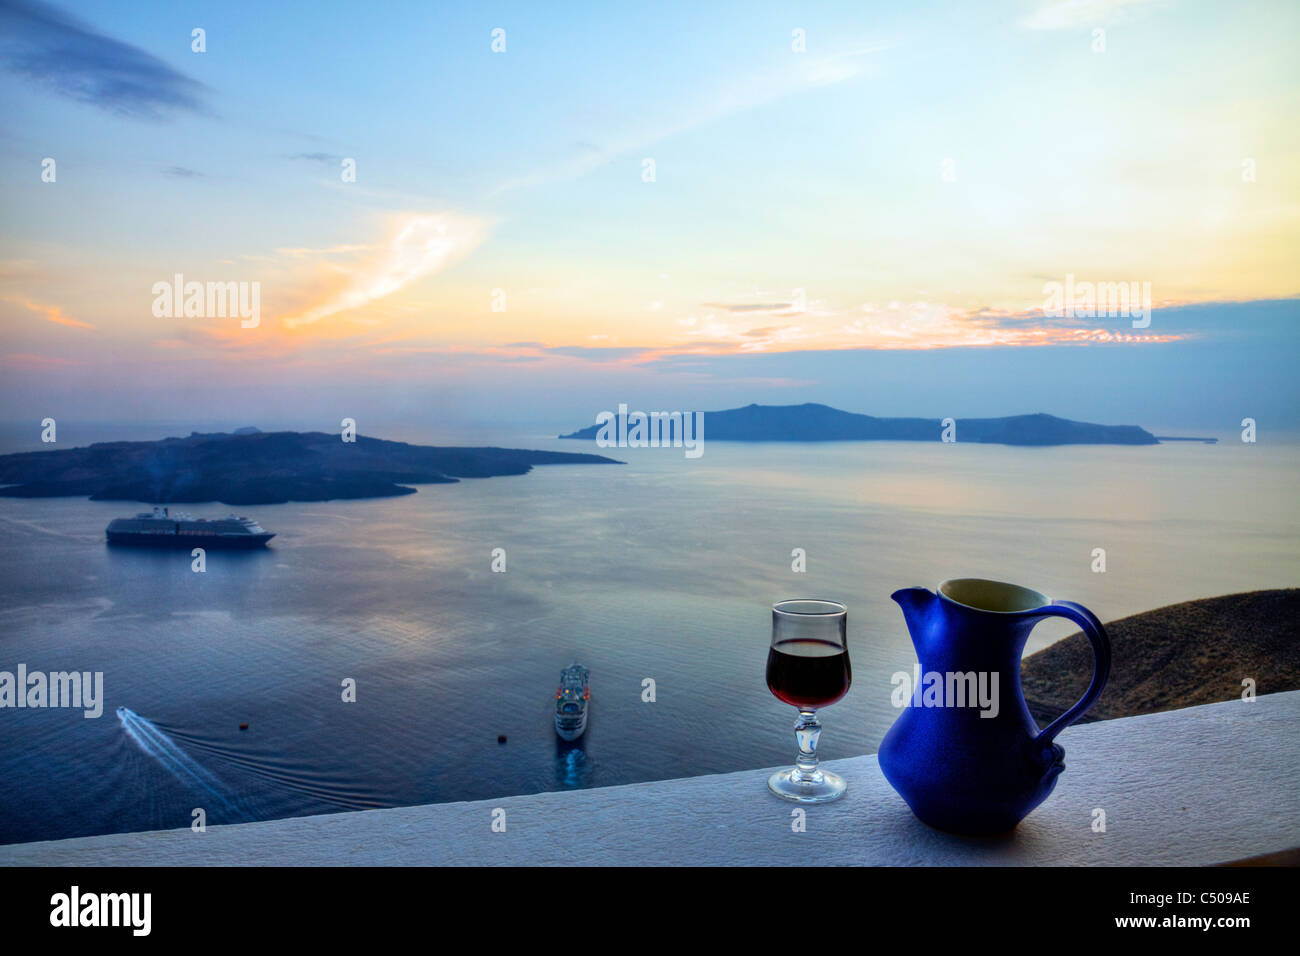 Tipico di Santorini iconico isola greca tramonto bere del vino Retsina brocca in vetro e caldera nave da crociera thira Foto Stock